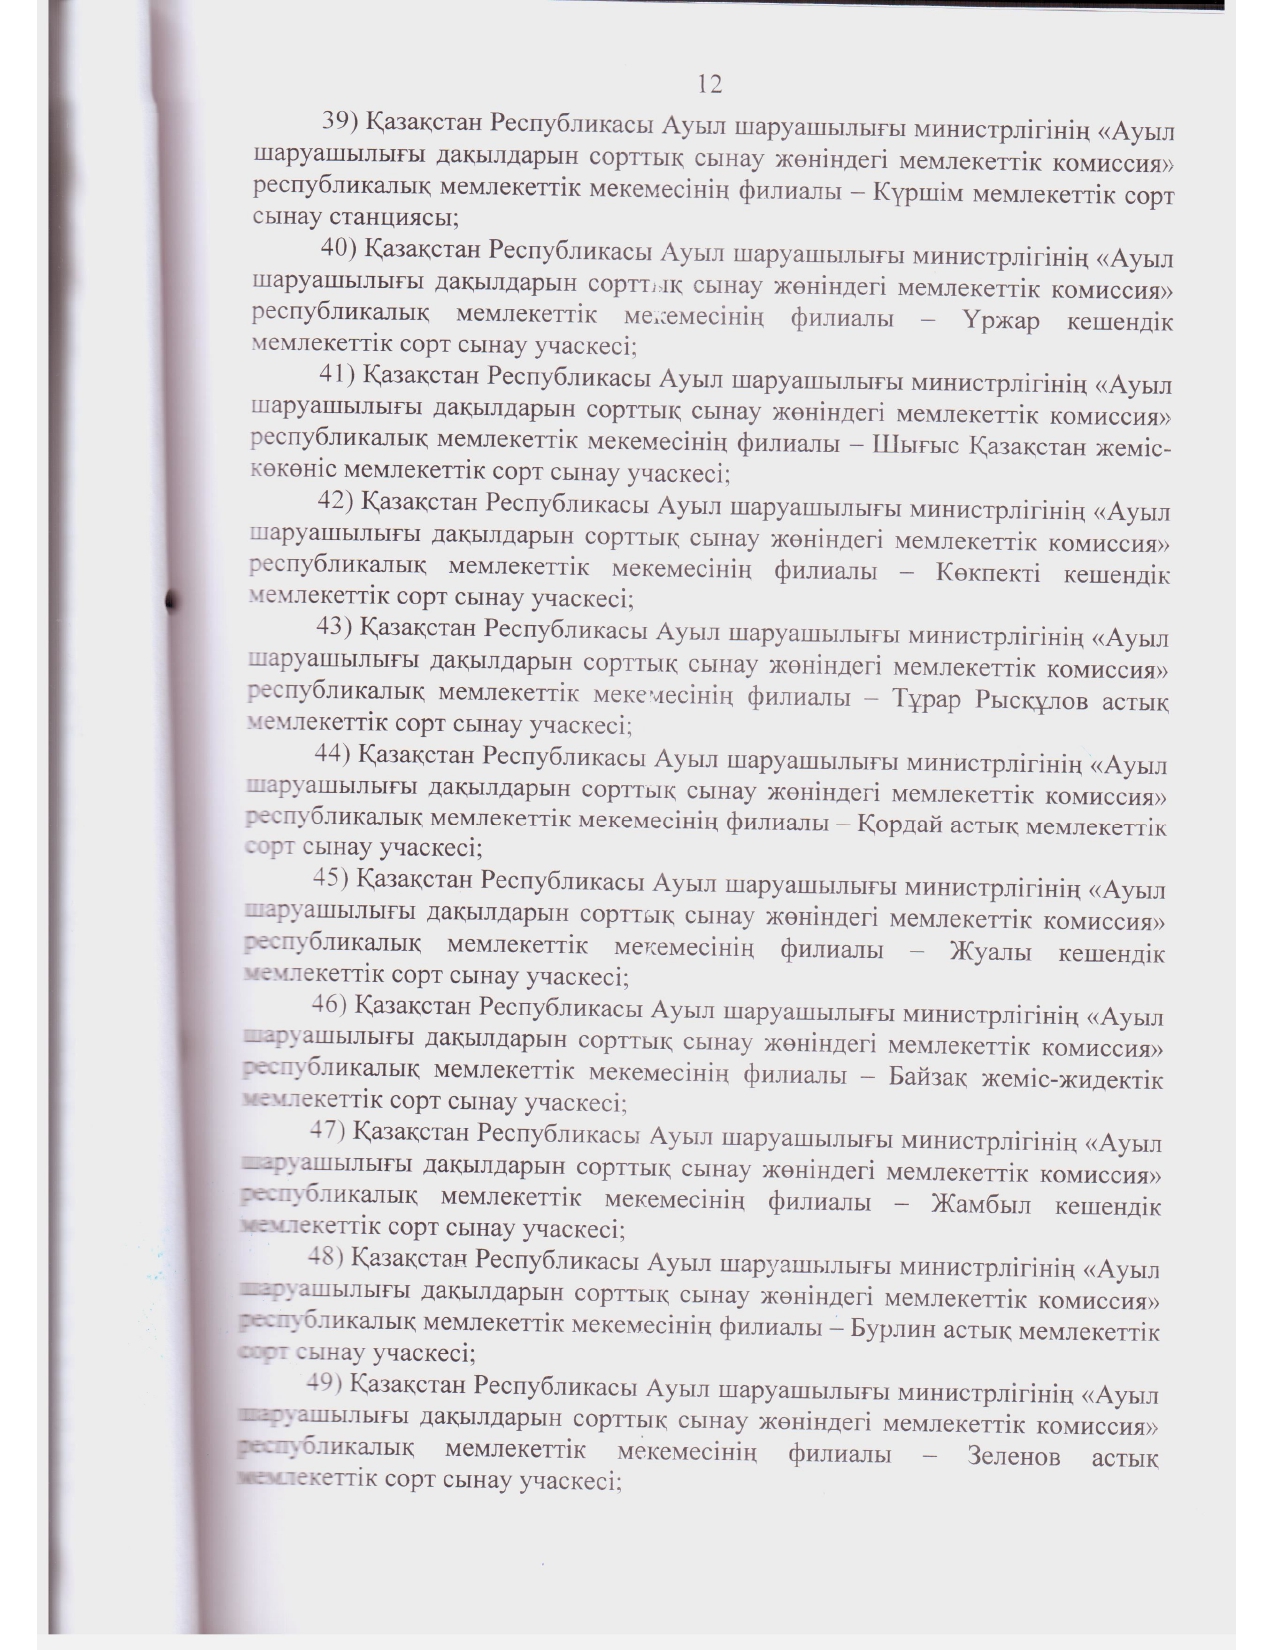 Устав ГосКомиссии_2021 год зарегистрирован_page-0011